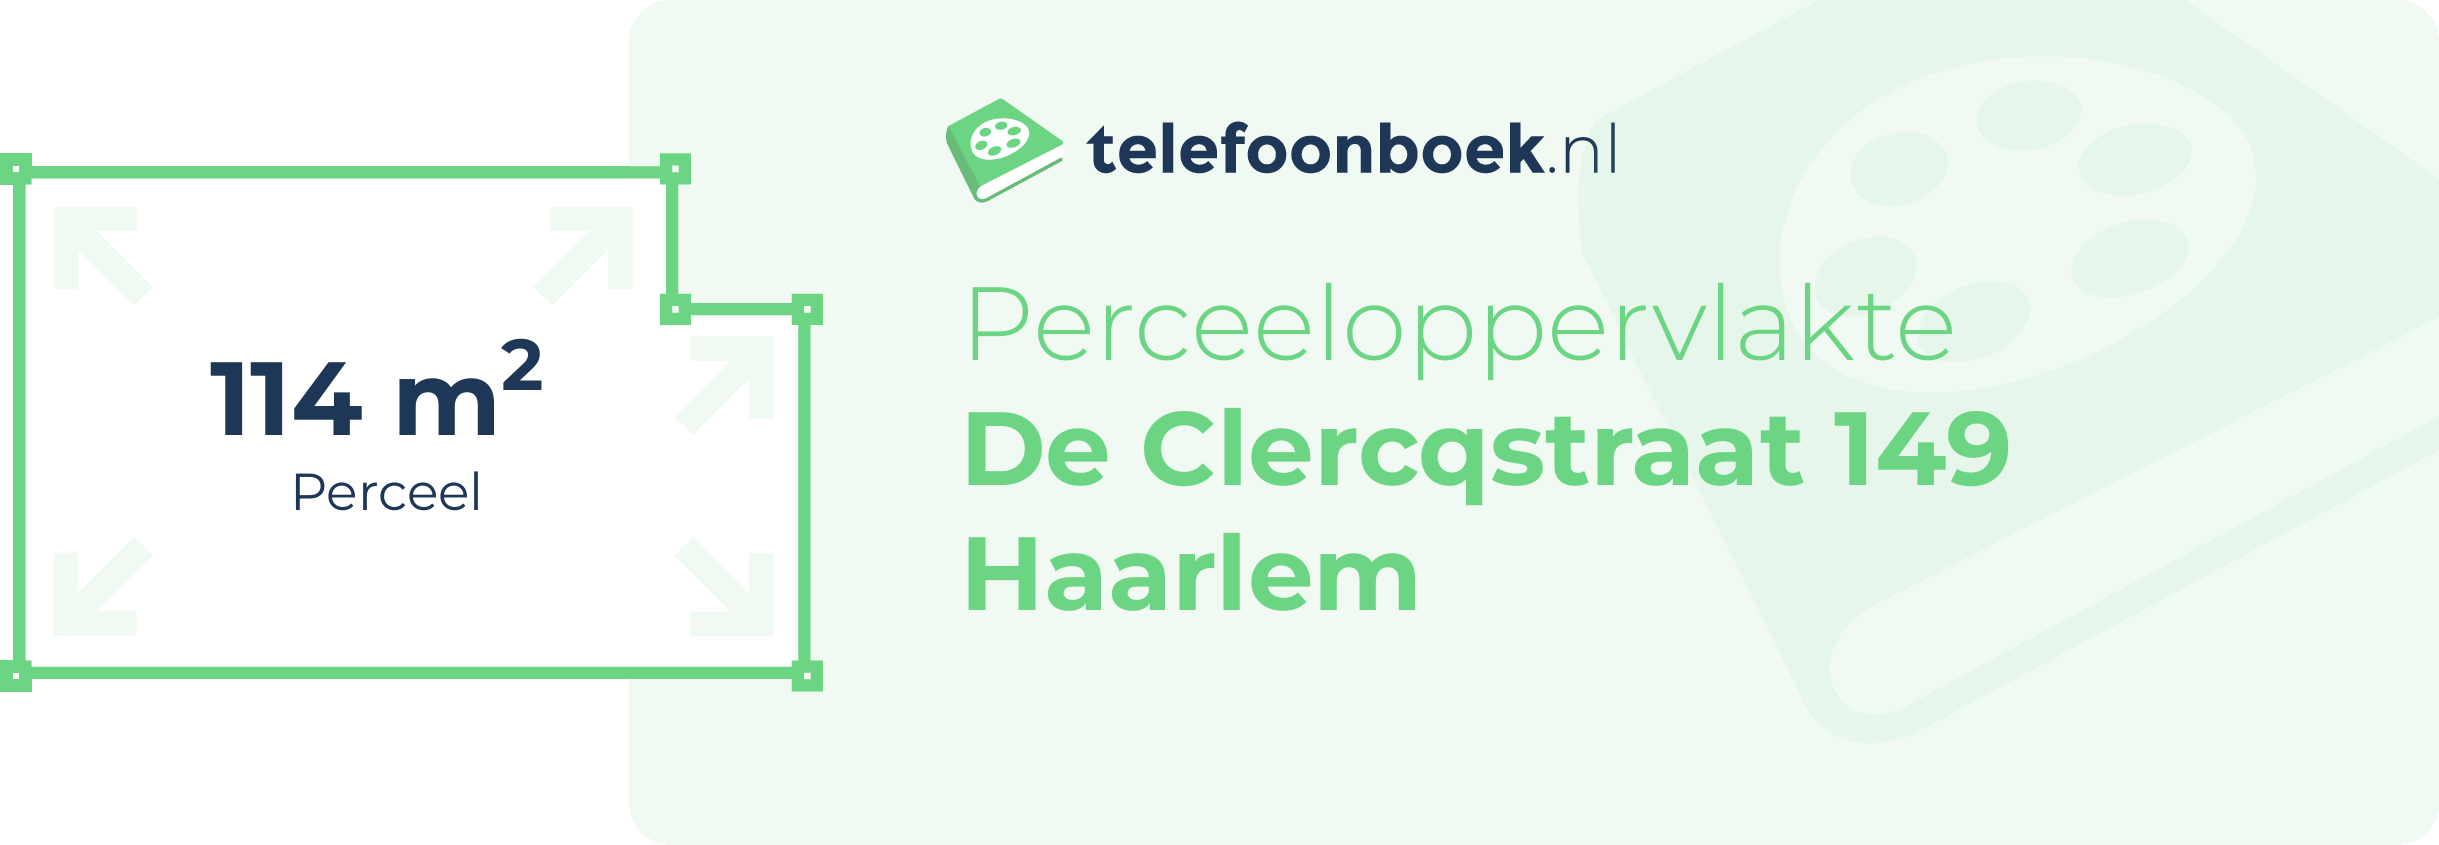 Perceeloppervlakte De Clercqstraat 149 Haarlem